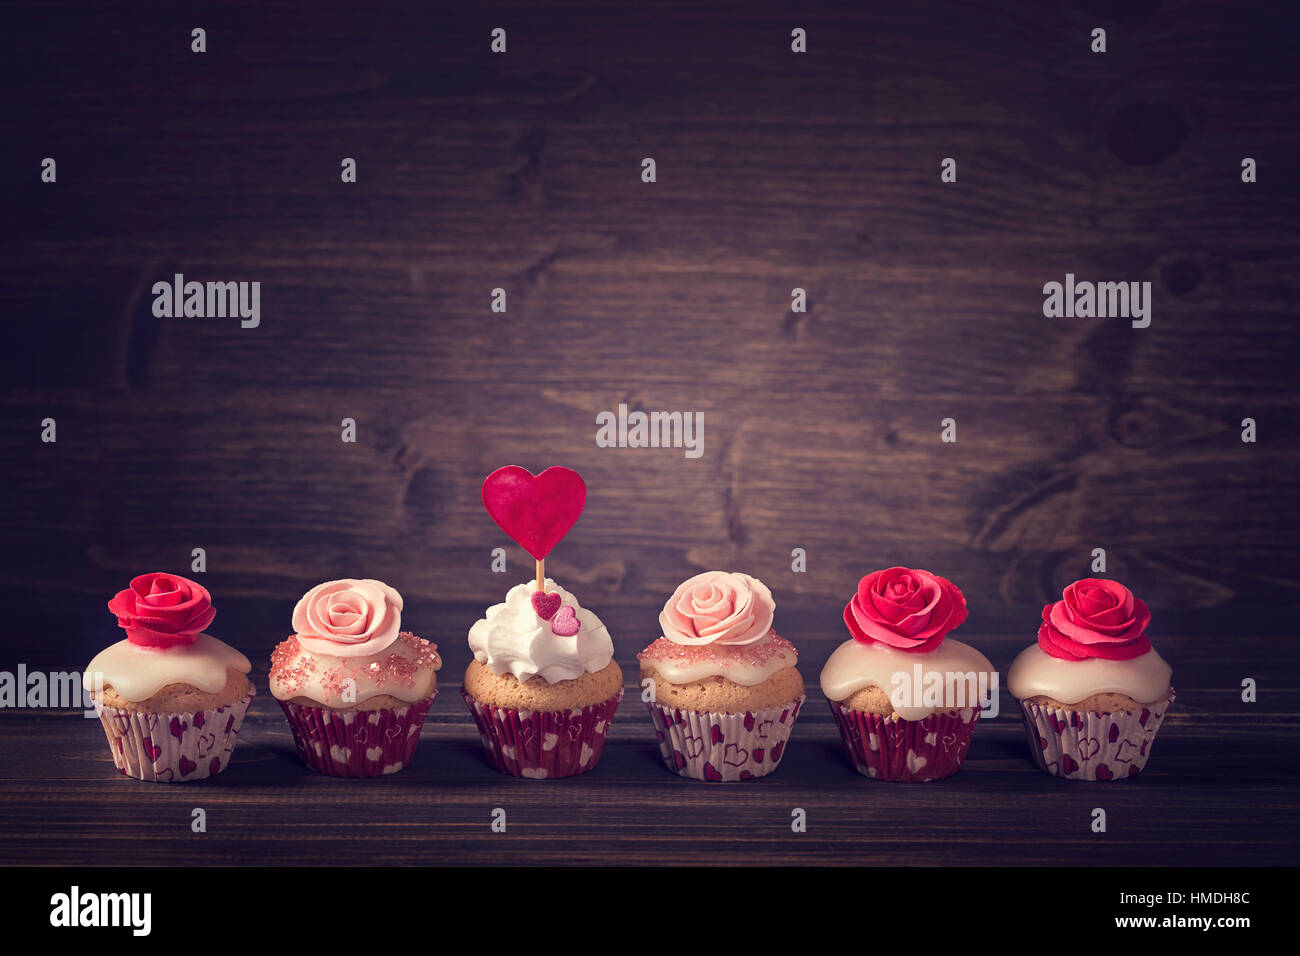 Kleine Muffins mit Rosen in einer Reihe Stockfotografie - Alamy